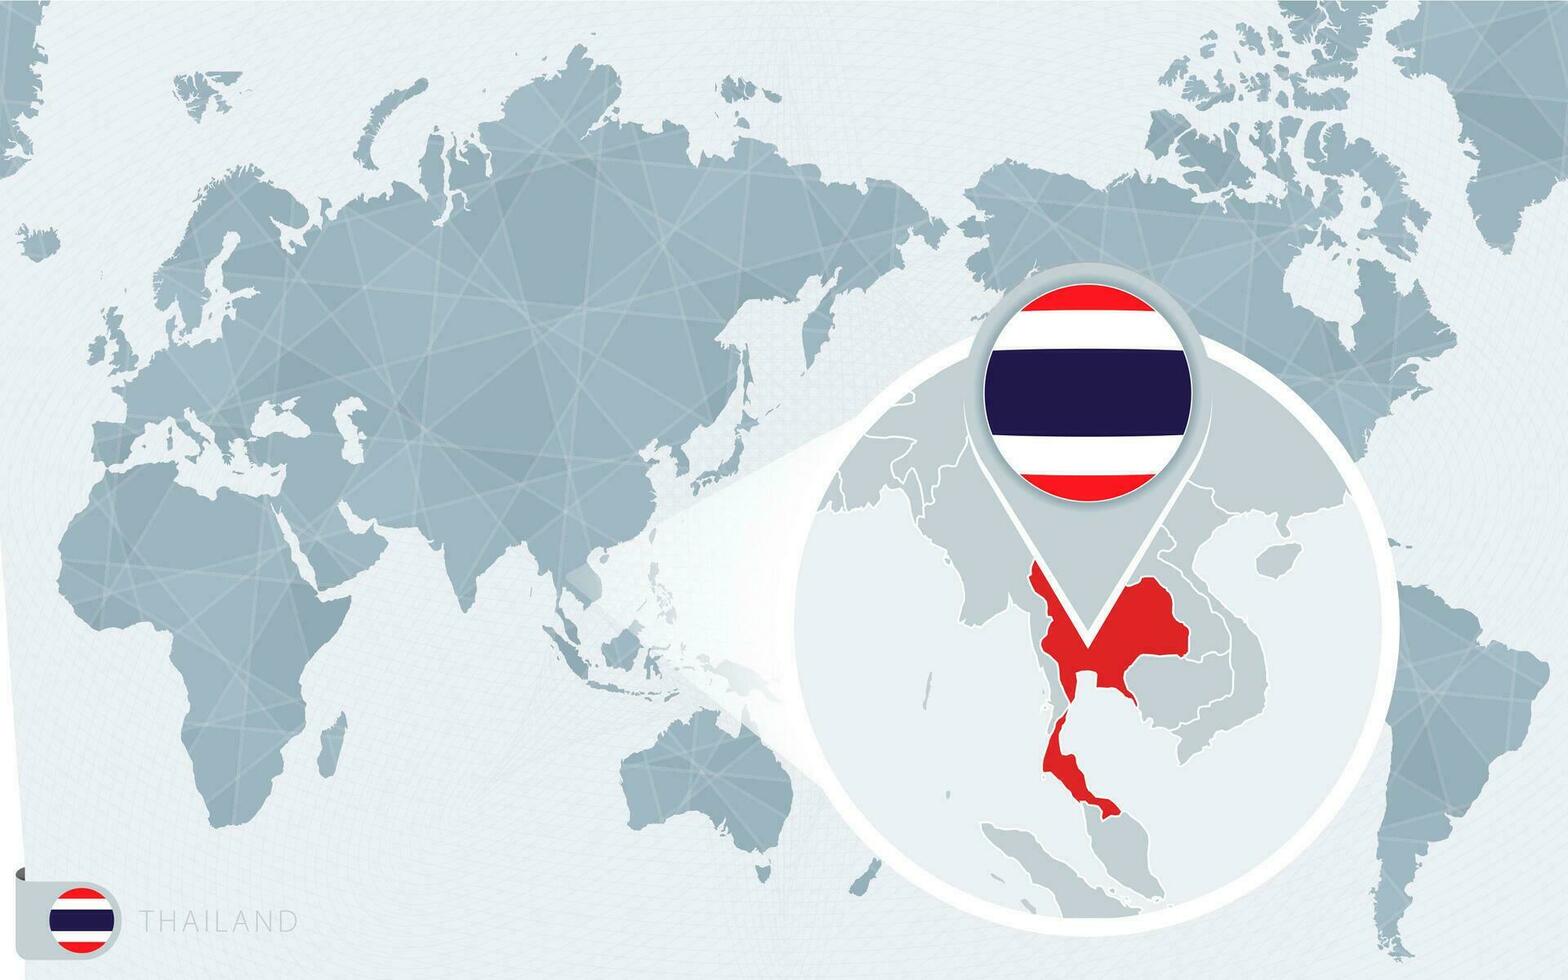 grote Oceaan gecentreerd wereld kaart met uitvergroot Thailand. vlag en kaart van Thailand. vector